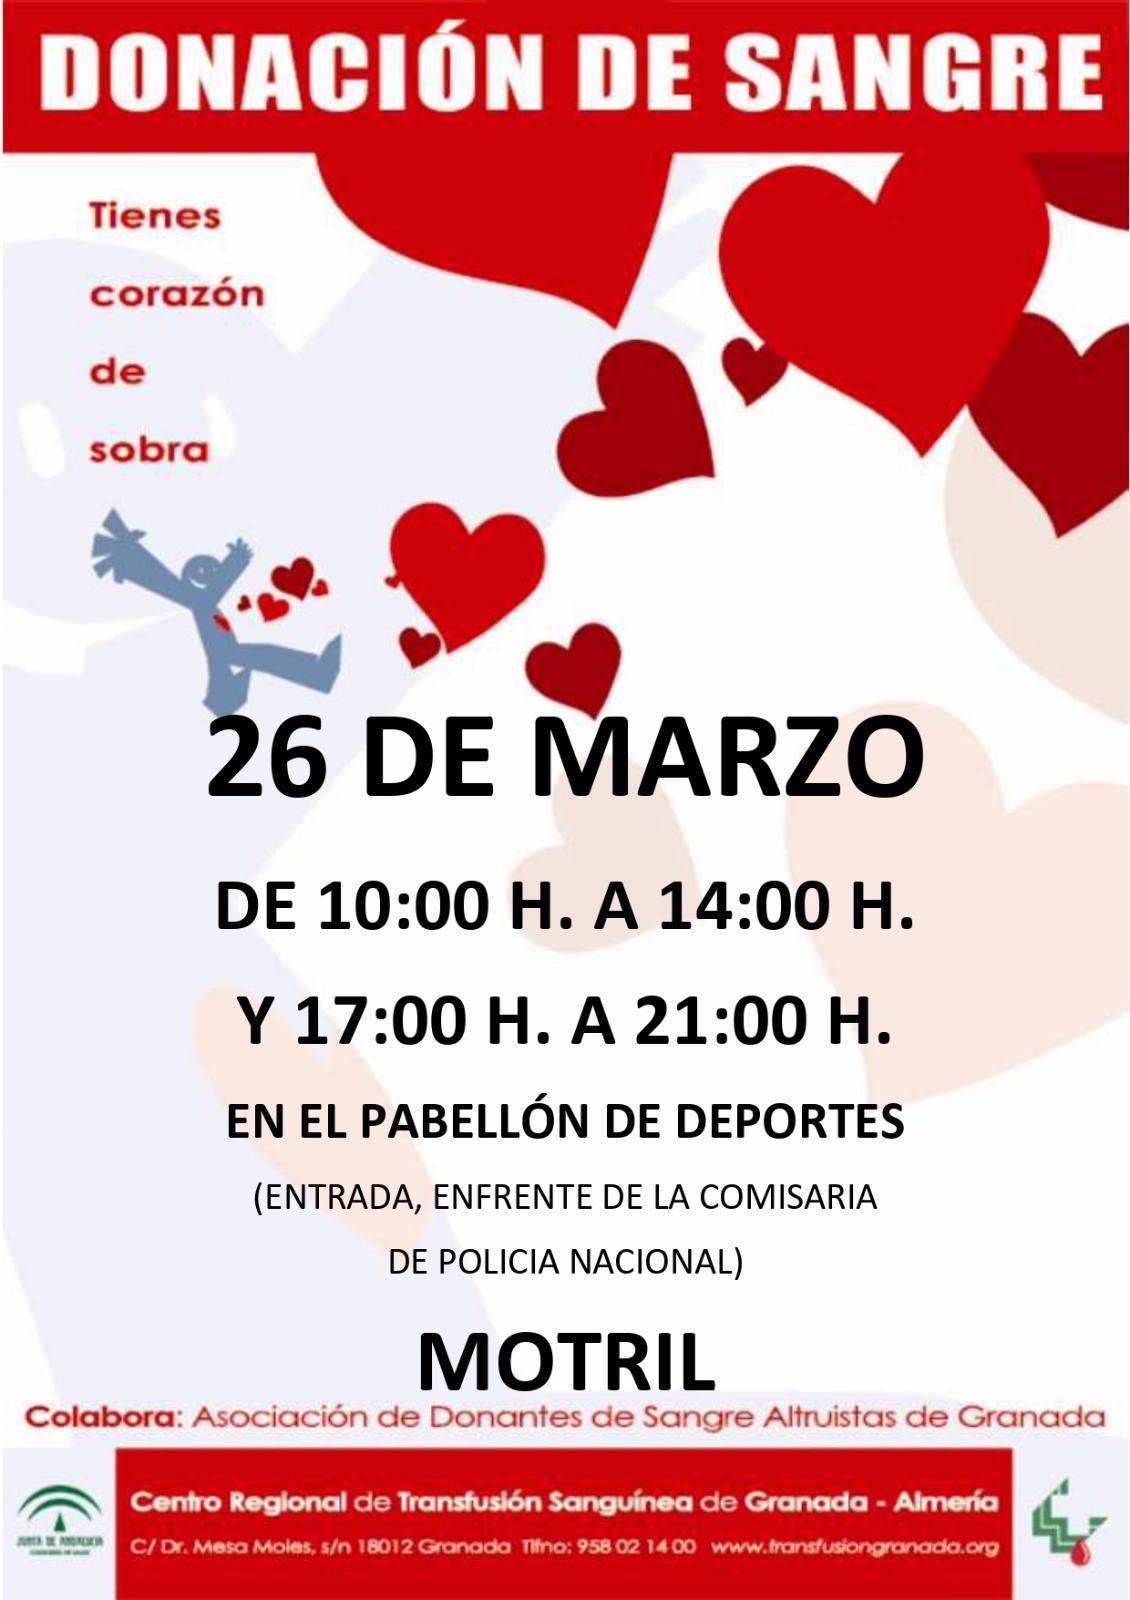 Donación de sangre (marzo 2021) - Motril (Granada)